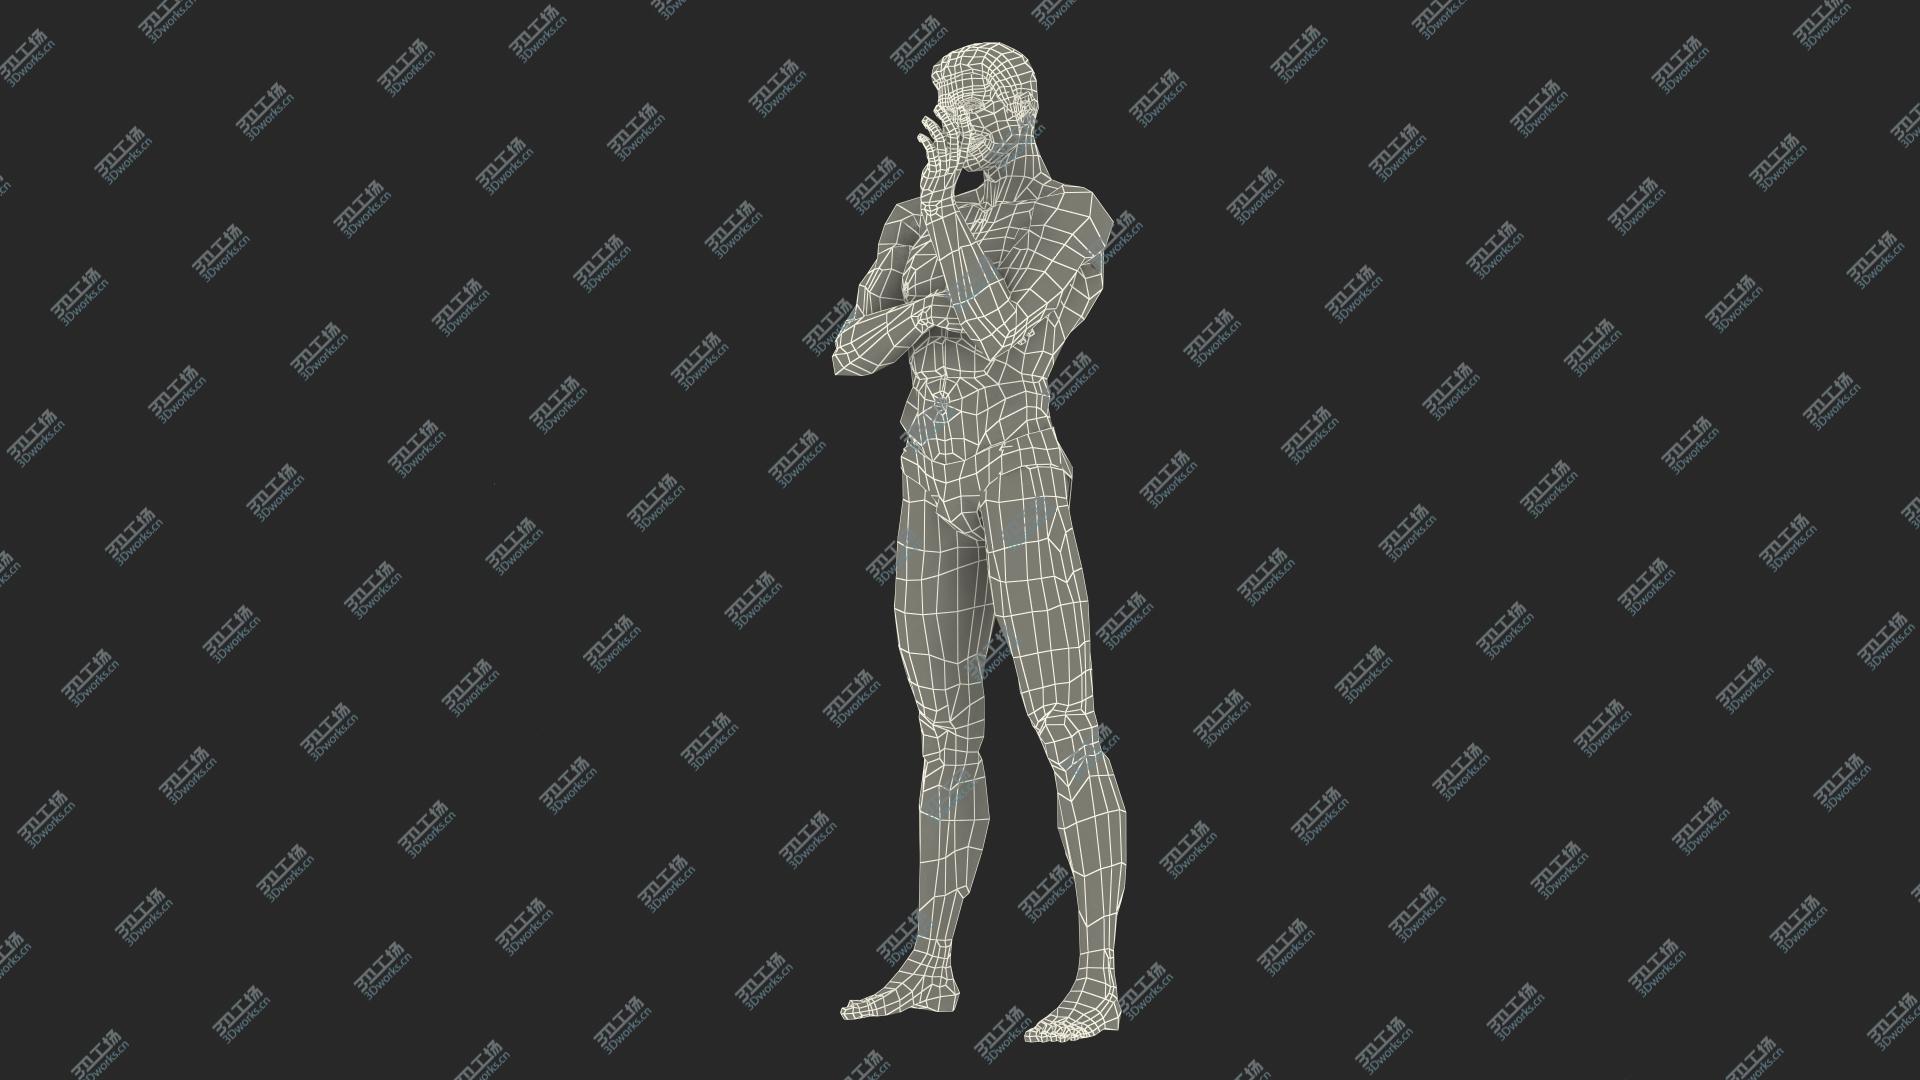 images/goods_img/202104092/Fitness Man Standing Pose model/4.jpg